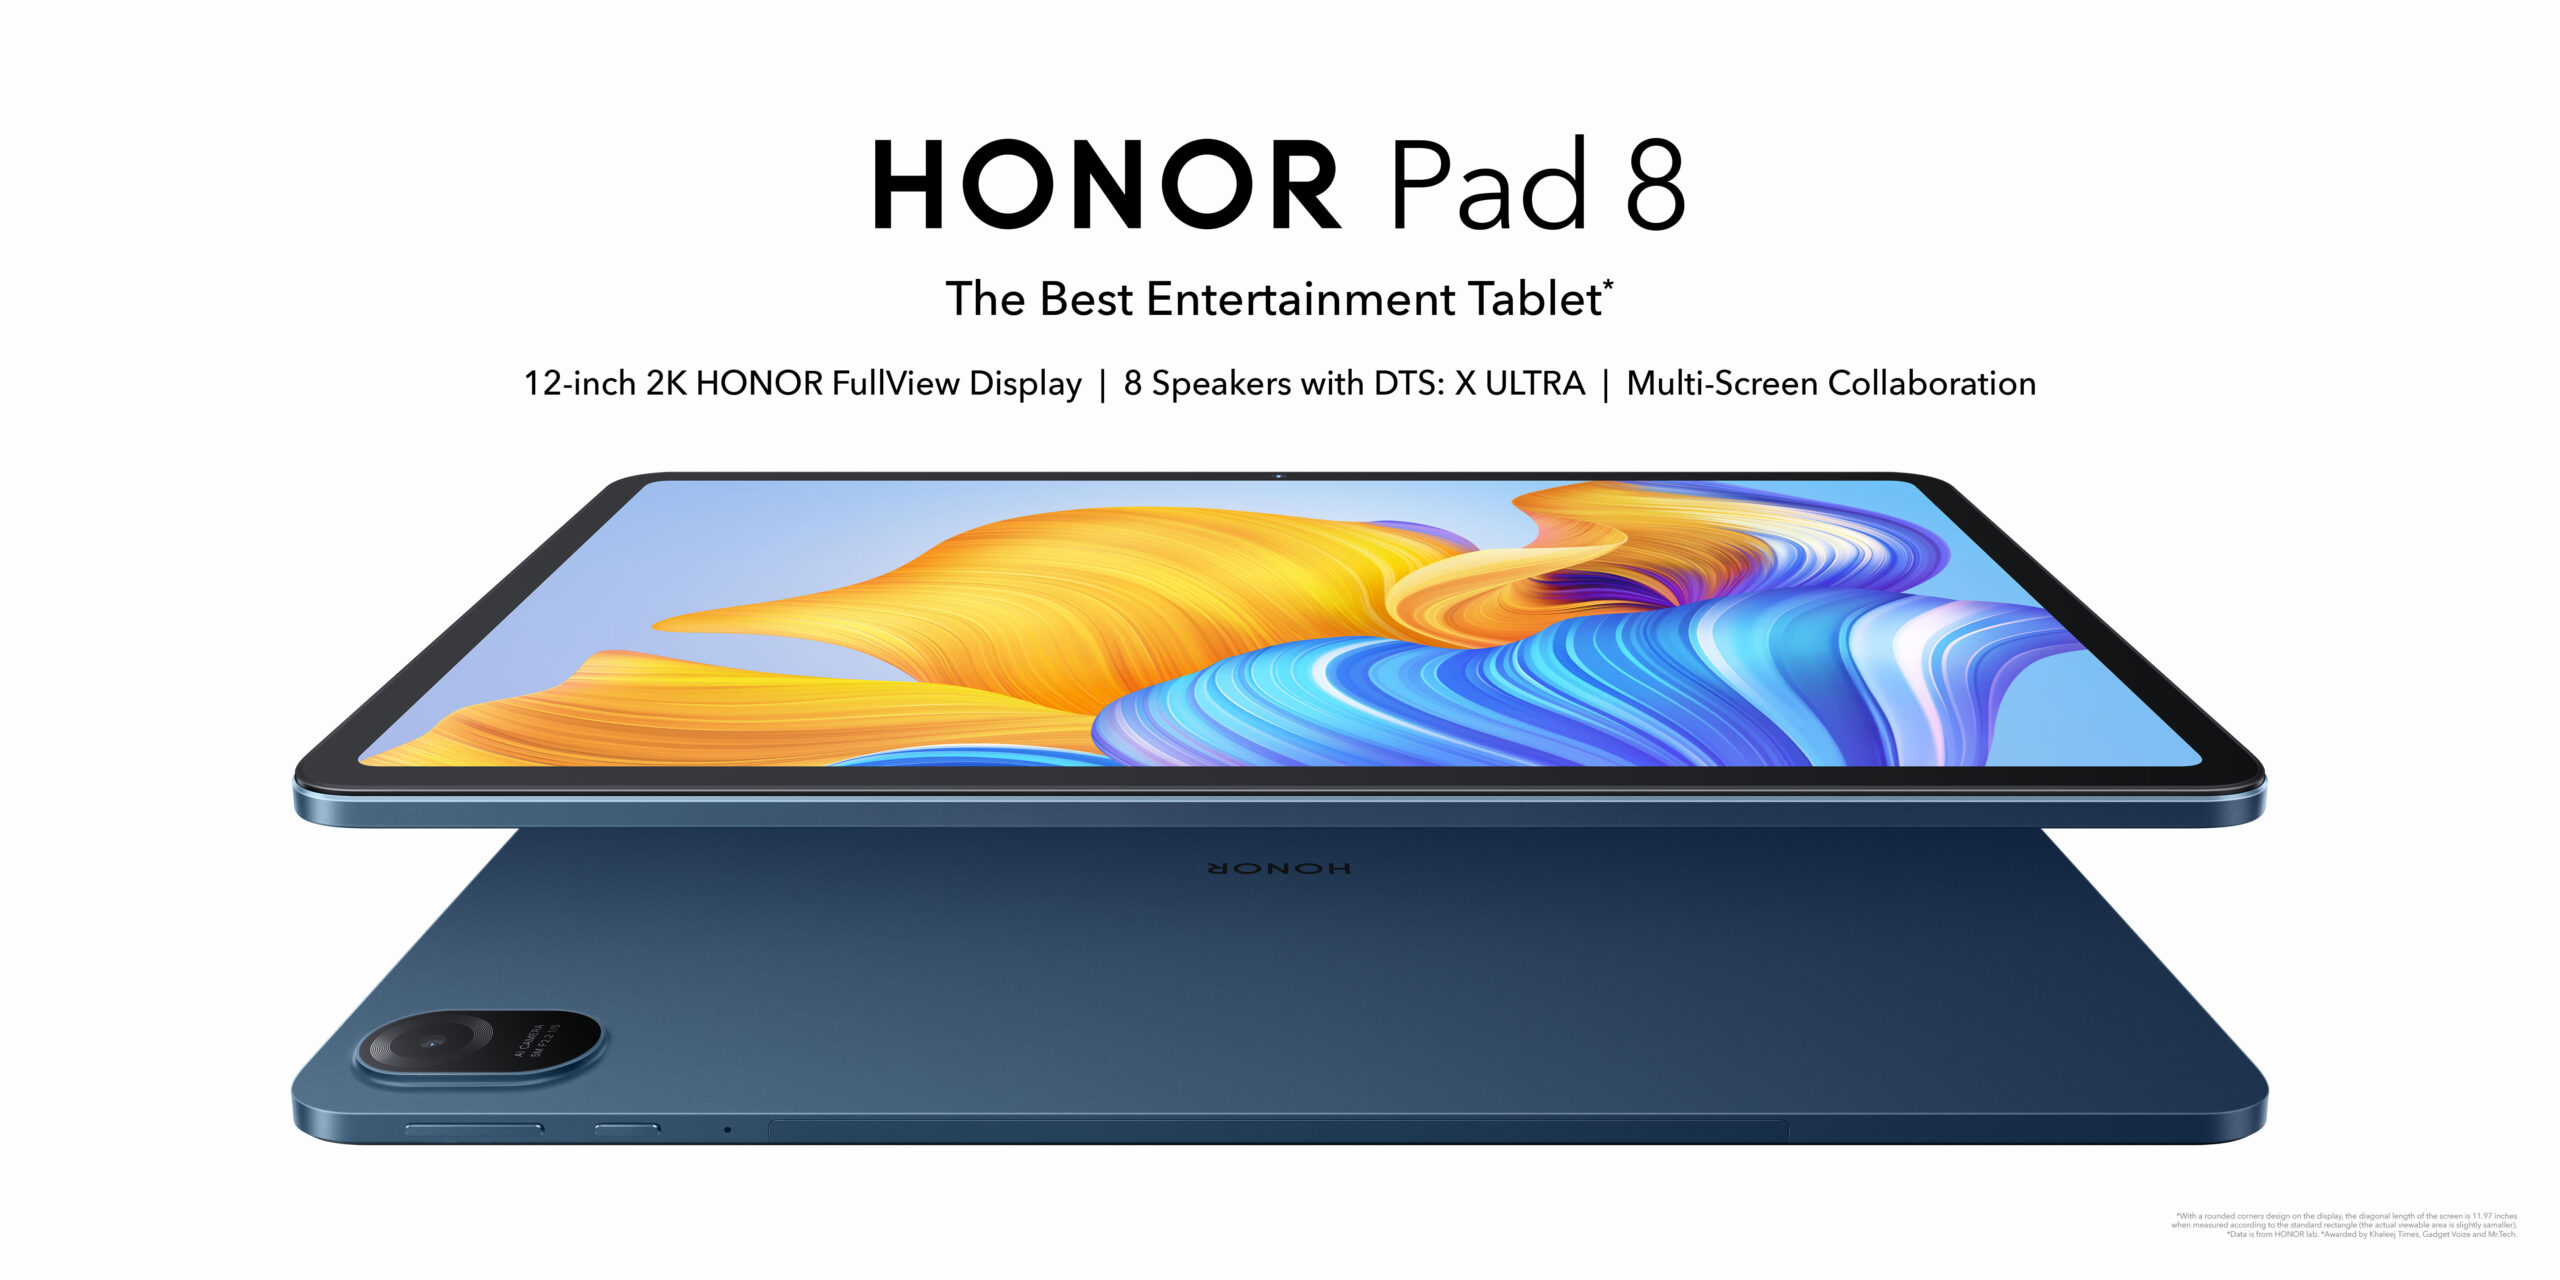 شركة HONOR تُعلن عن انطلاق HONOR Pad 8، والتي تُقدم من خلاله أفضل شاشة عرض في فئته وميزات صوتية استثنائية